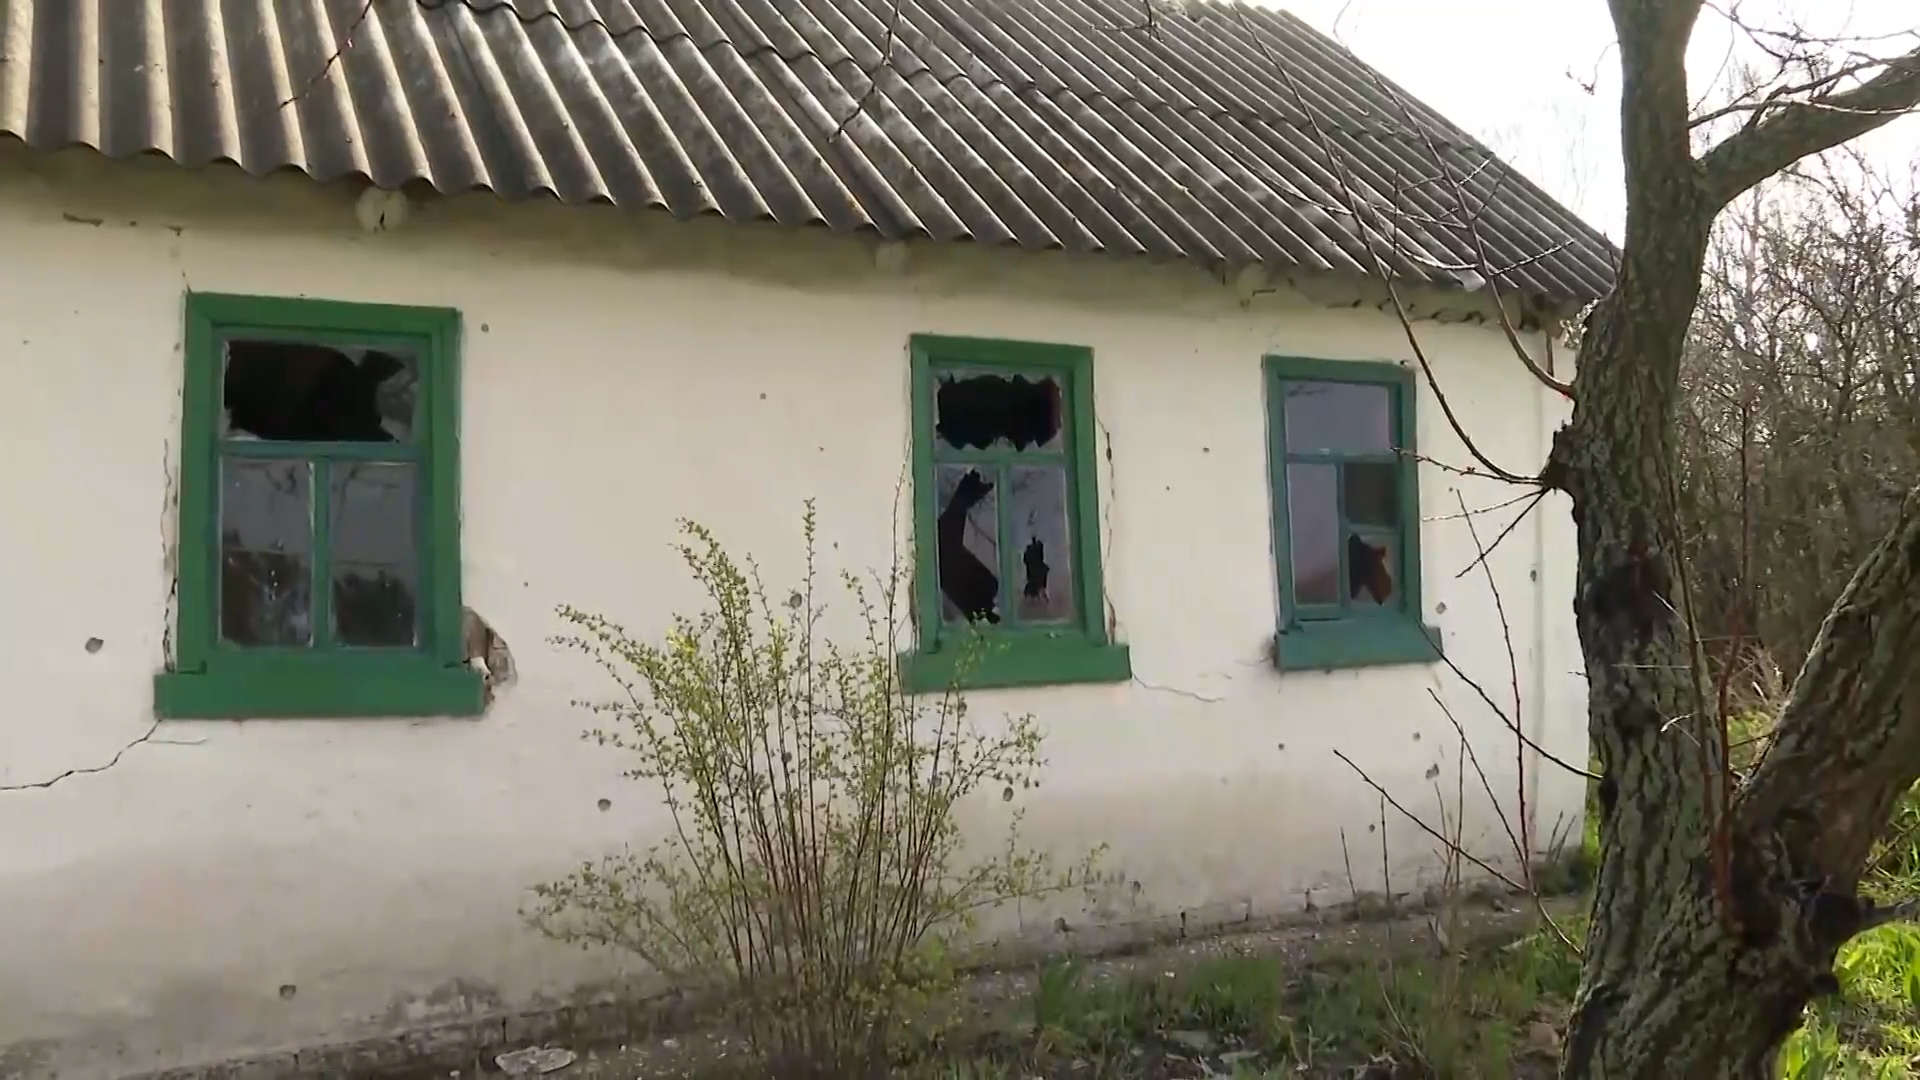 'Vụ nổ kinh hoàng đã đánh thức tôi' - Người dân Nga nói về vụ pháo kích ở Golovchino